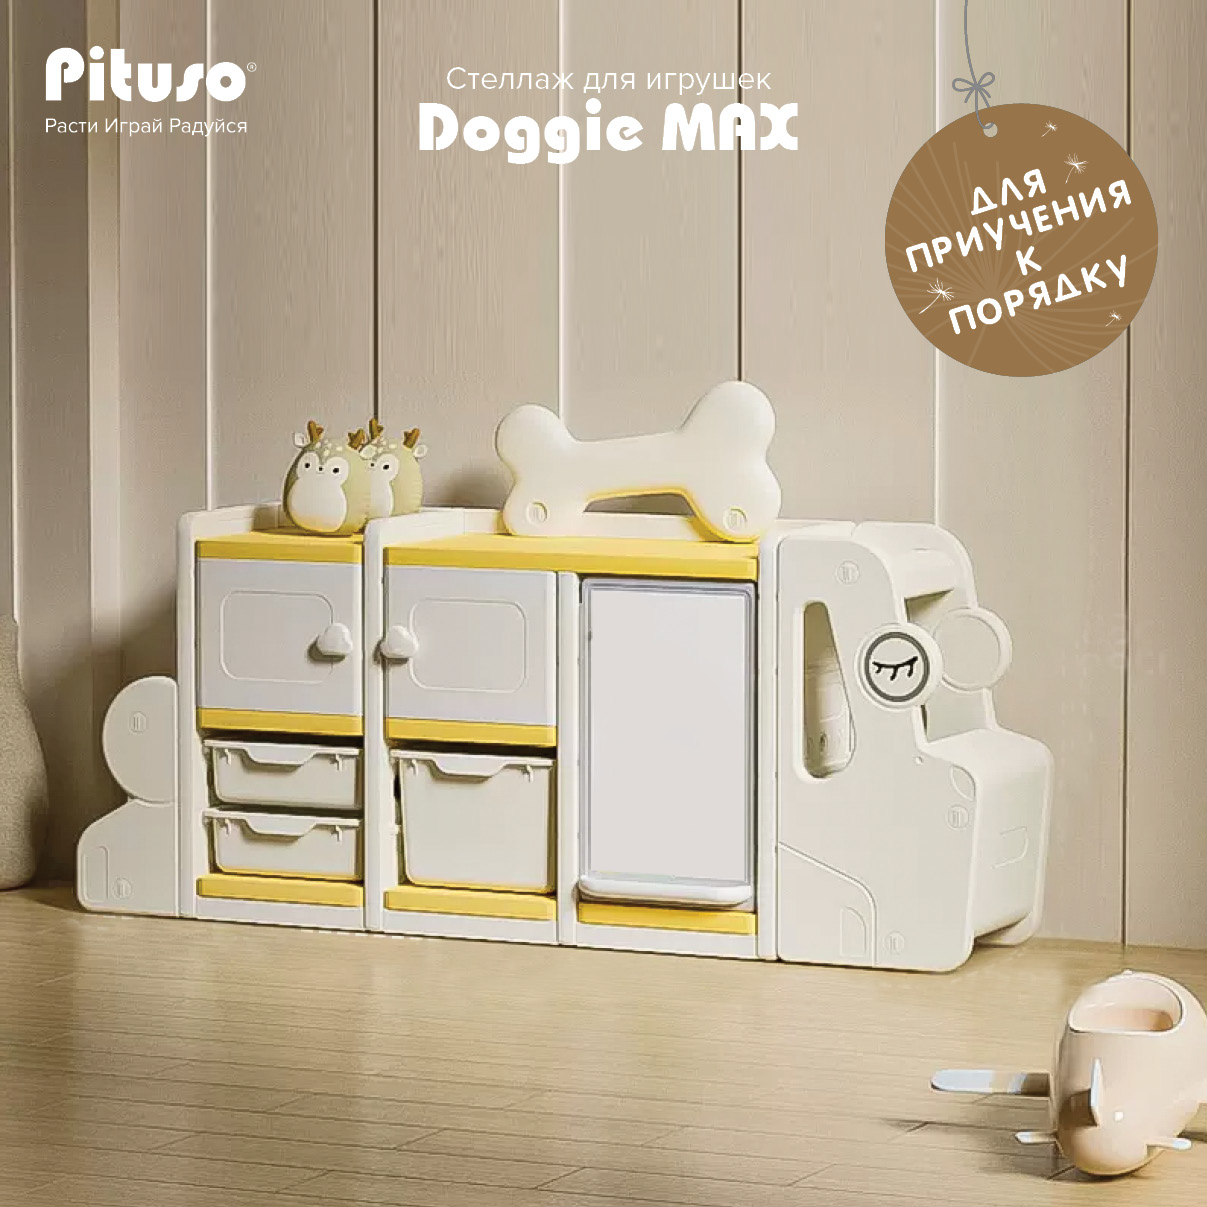 Стеллаж для игрушек с ящиками Pituso Doggie Max, доска для рисования, бежевый, желтый стеллаж для игрушек ifam designtoy 1 бежевый